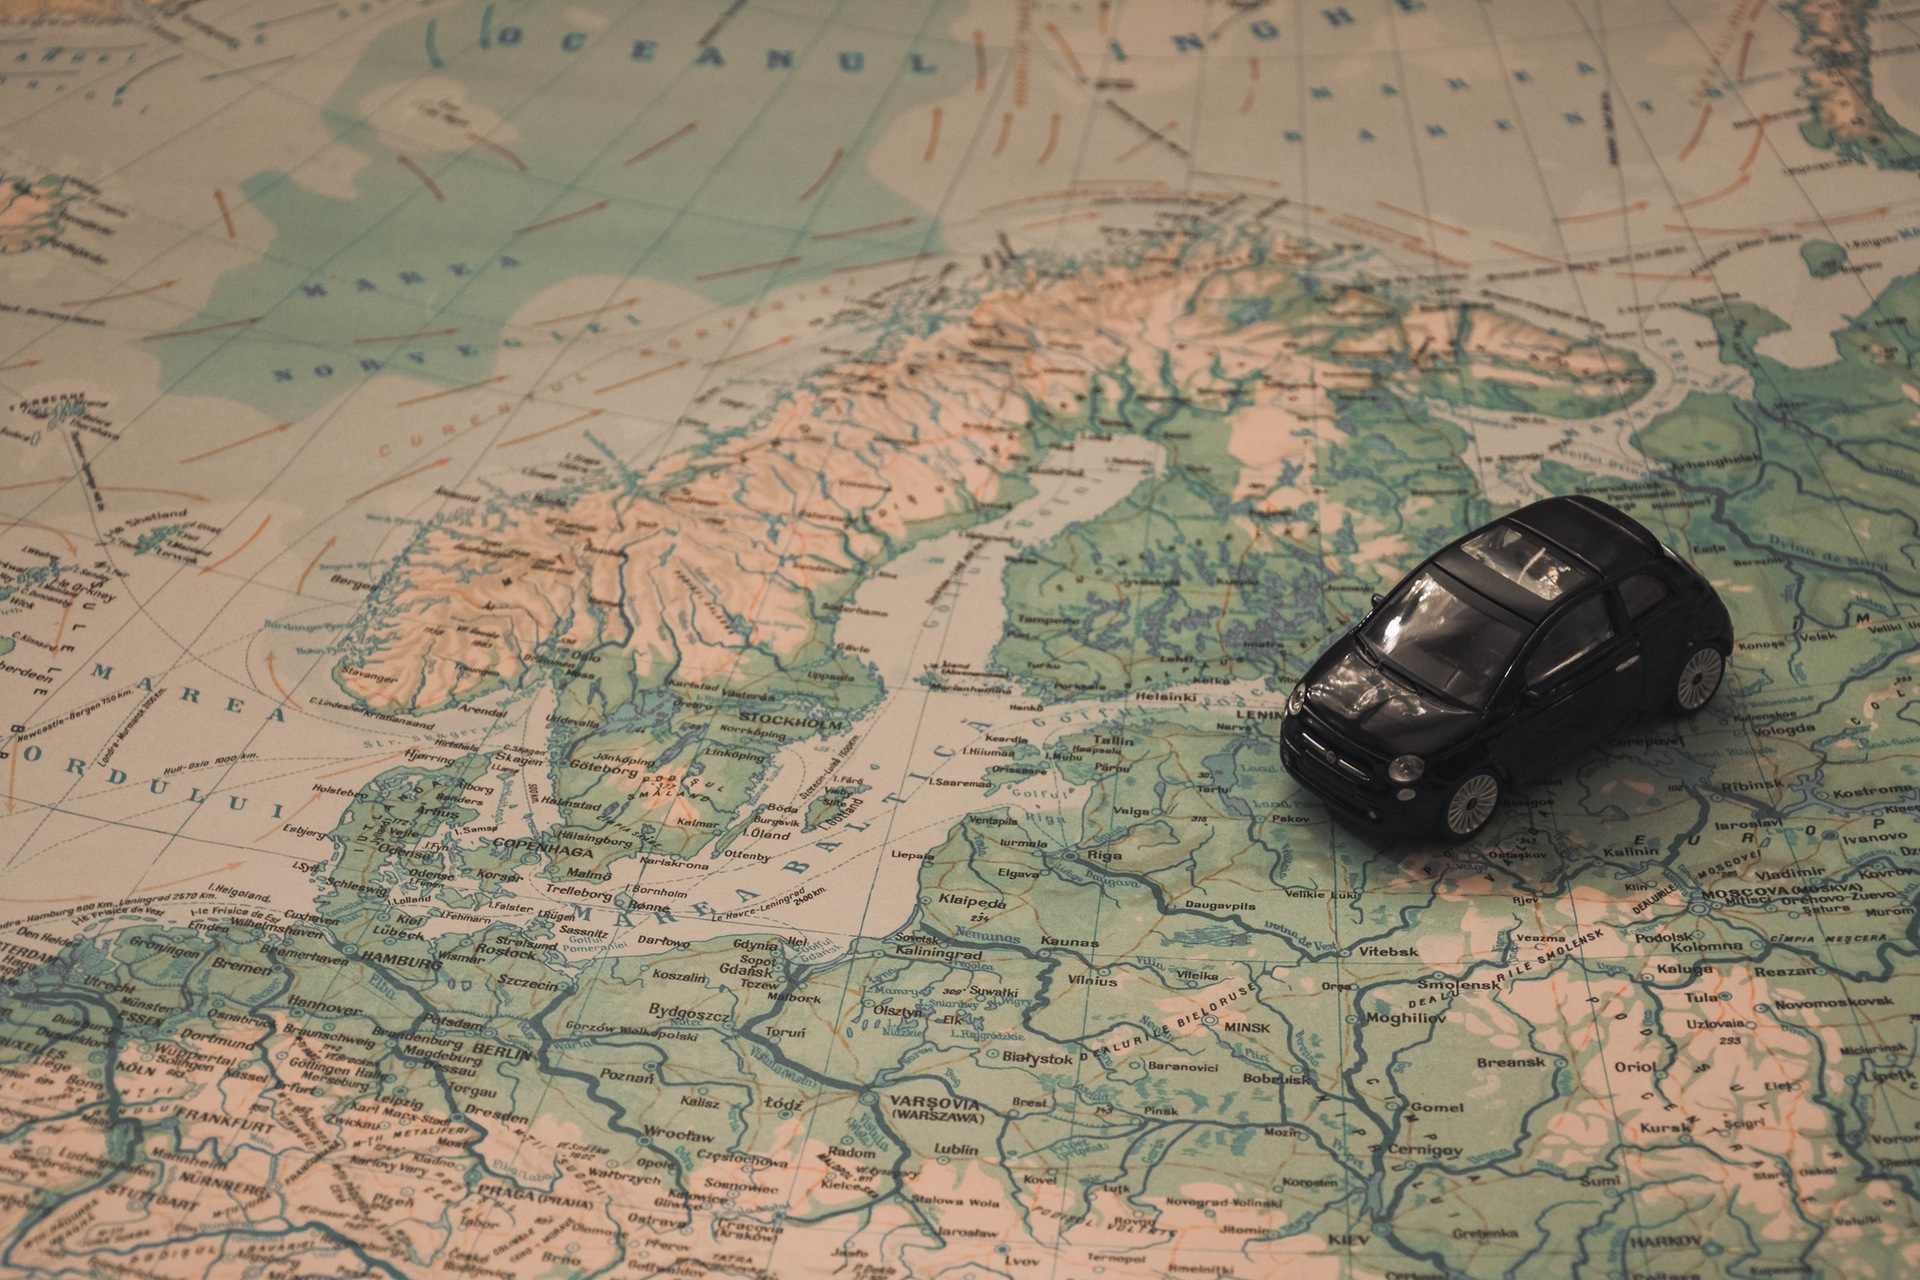 Πώς να φέρετε το αυτοκίνητό σας από την Ελλάδα στη Γερμανία